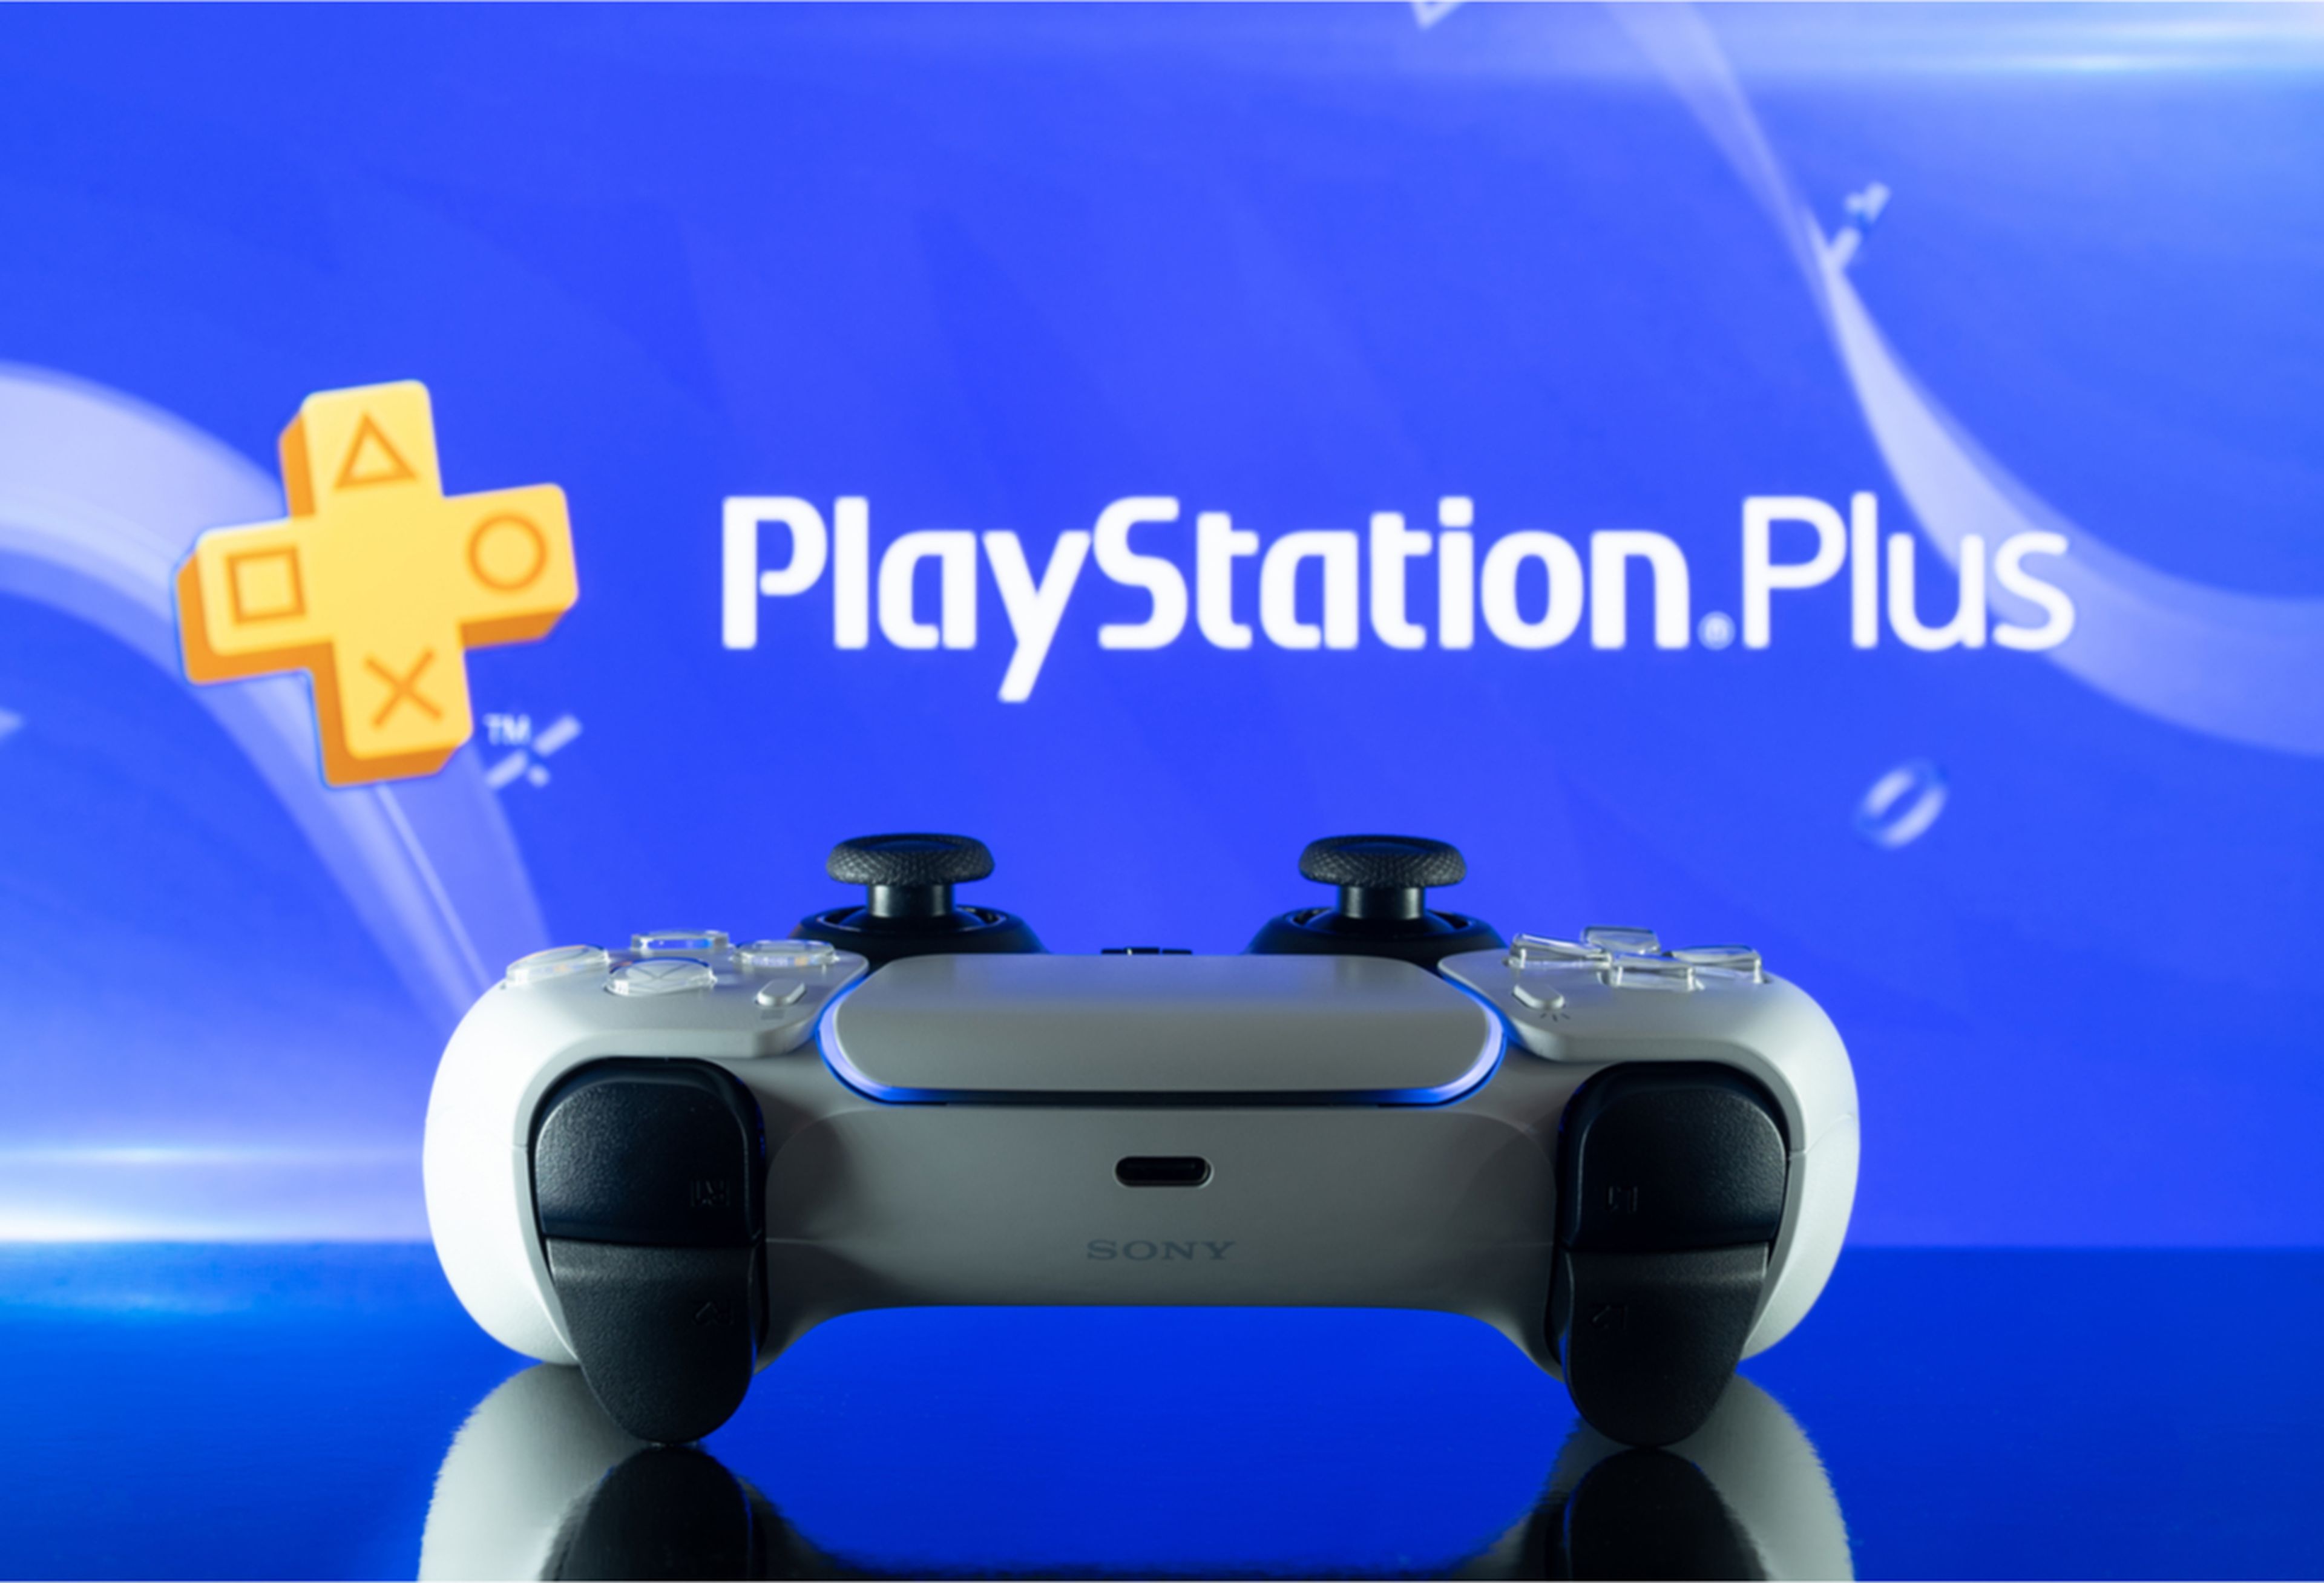 Ofertas de PlayStation durante Black Friday 2021: accesorios